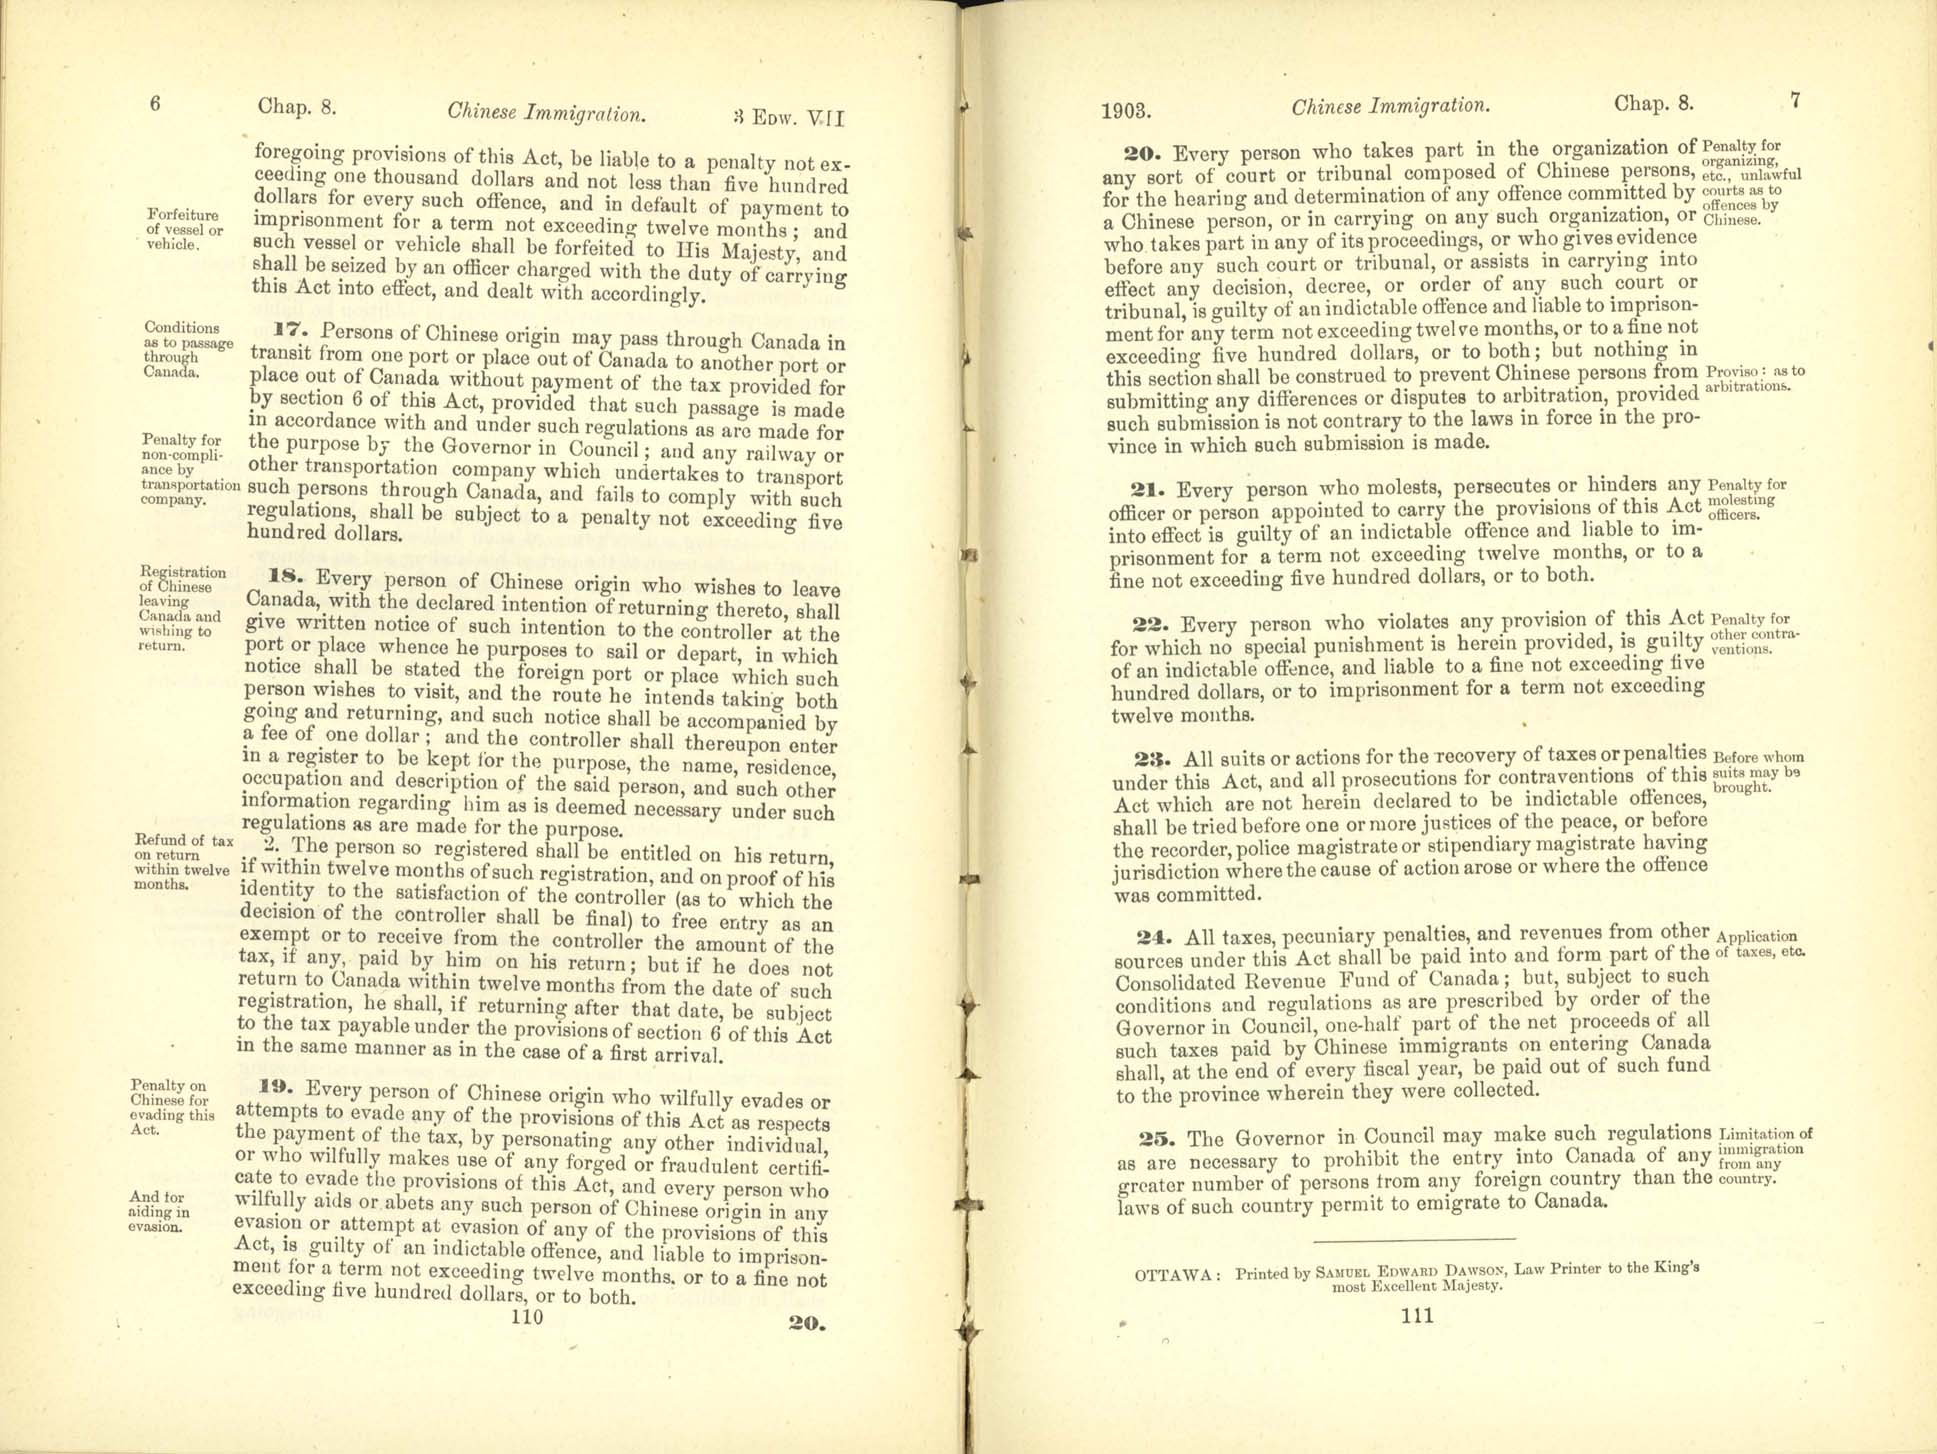 Chap. 8 Page 110, 111 Acte de l’immigration chinoise, 1885 Amendment 1903